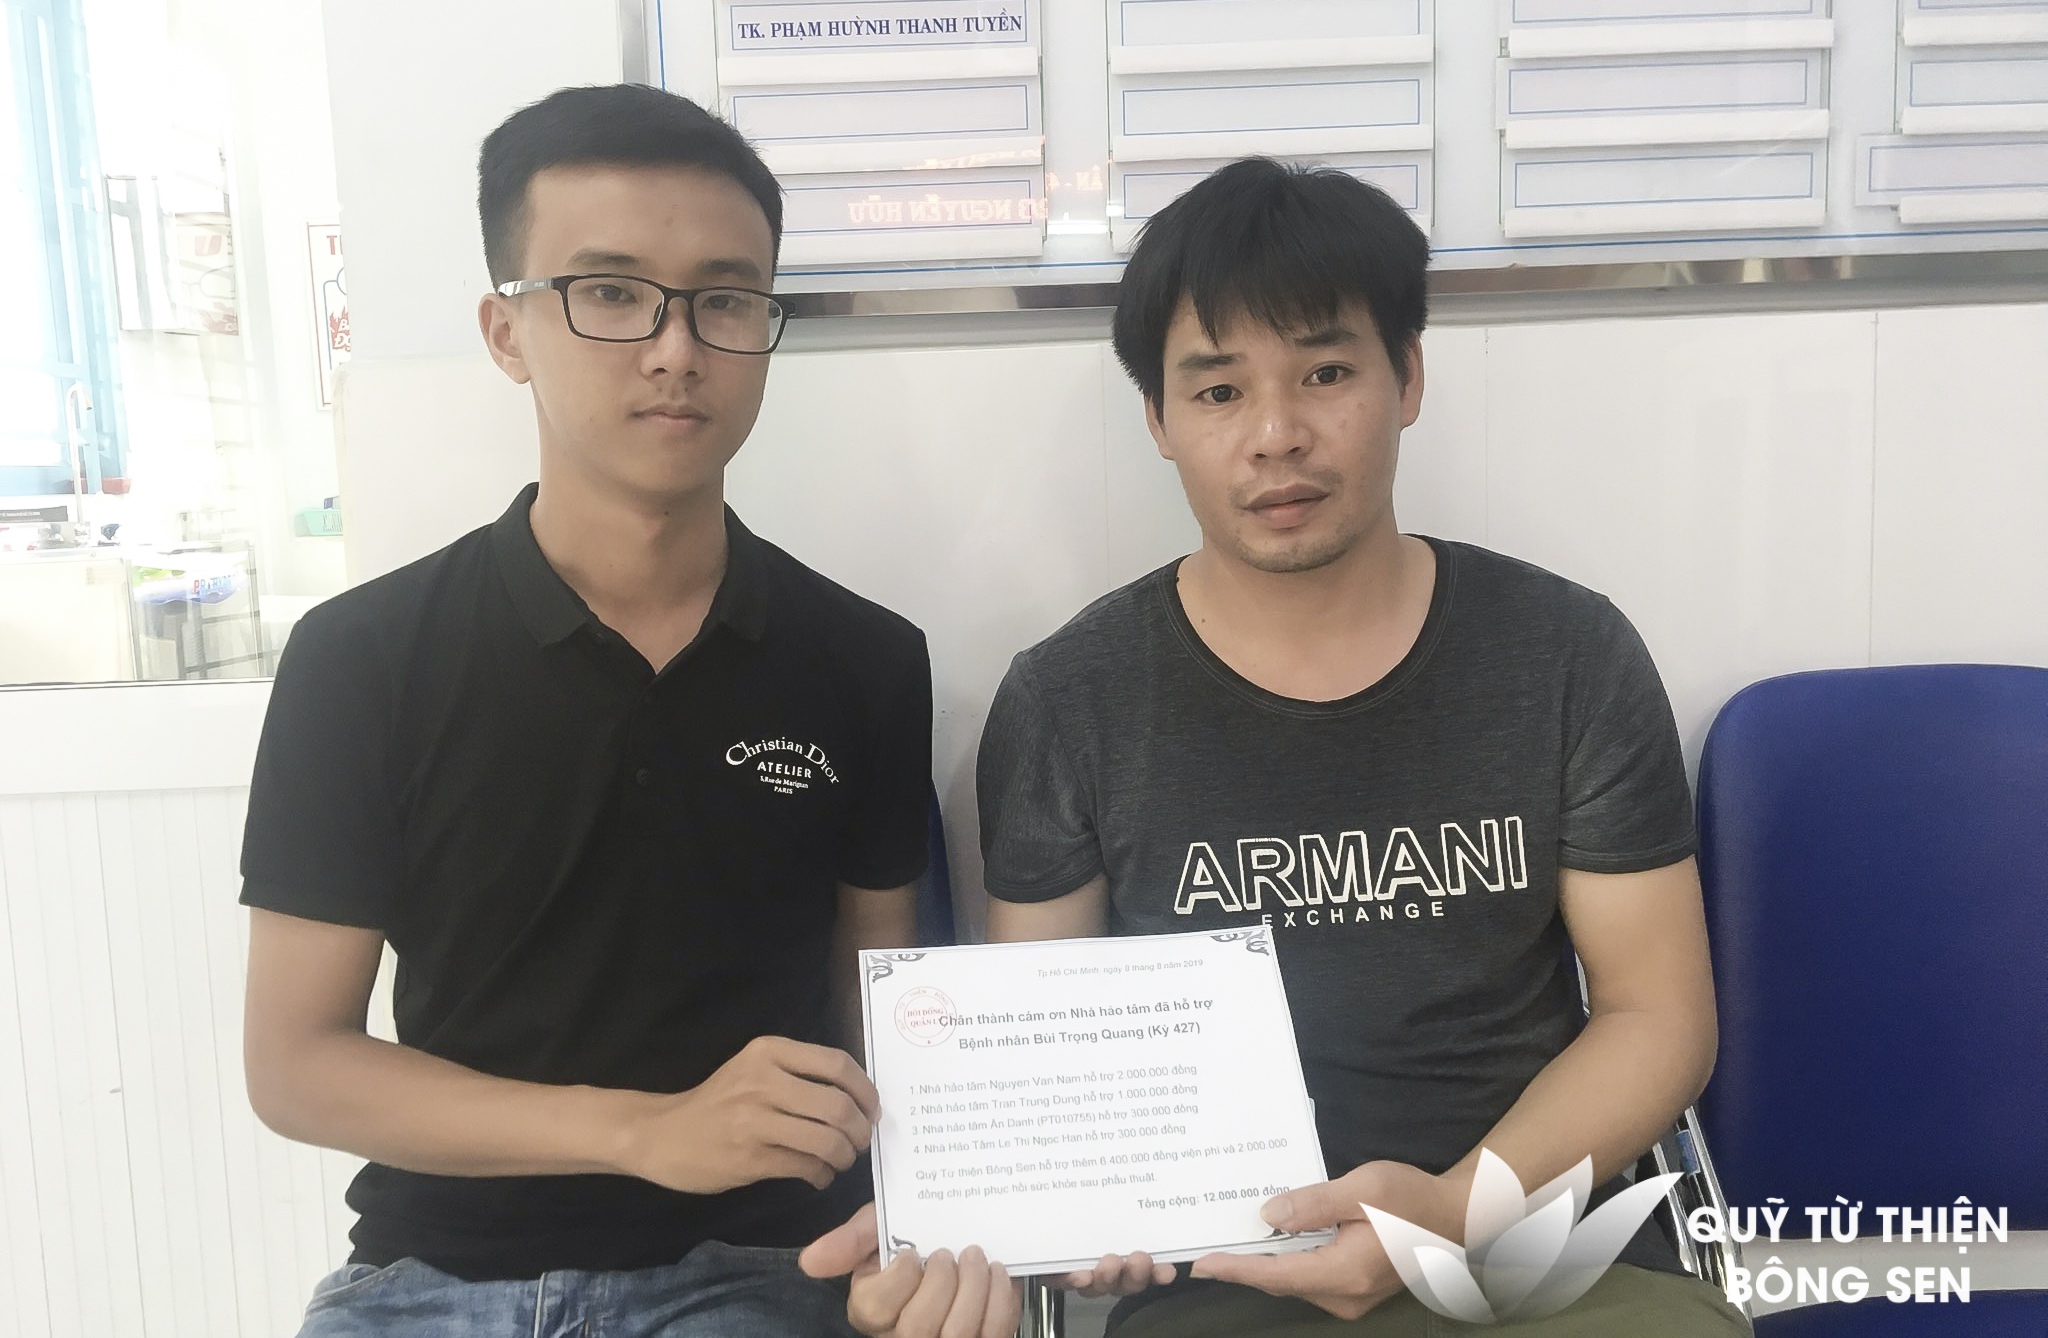 Kỳ 427: Bùi Trọng Quang (1 tuổi) quê Thanh Hóa, Tim bẩm sinh, hỗ trợ 12 triệu đồng ngày 8/8/2019